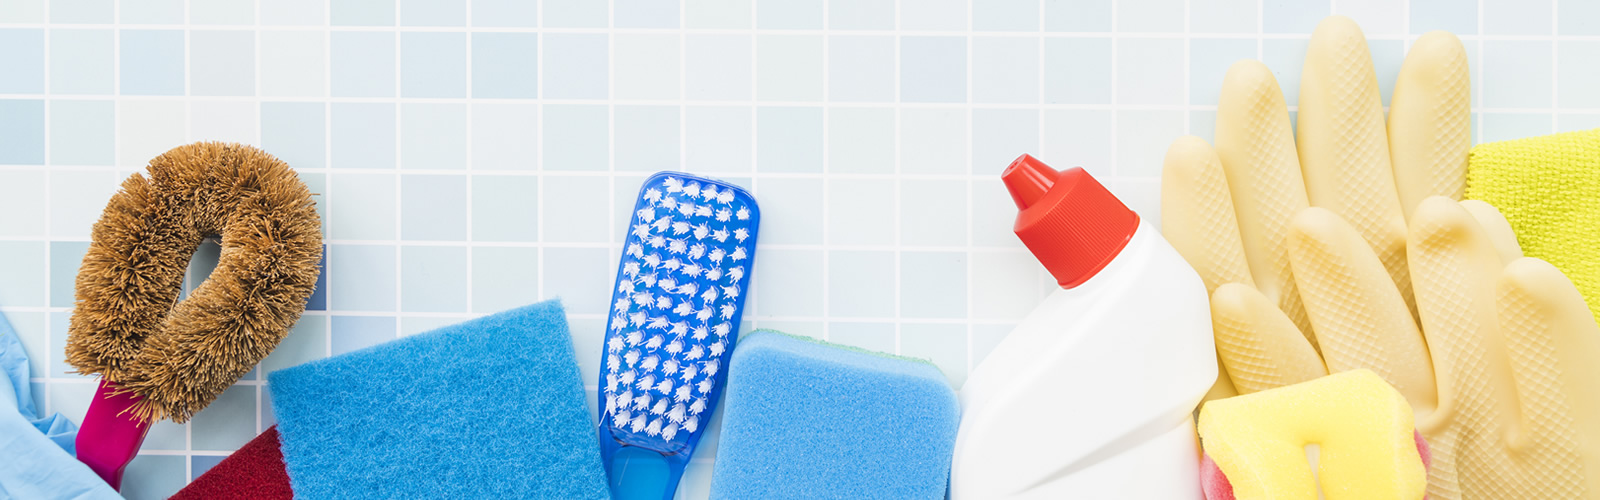 PETS EM CASA | Dicas para manter a limpeza da sua casa